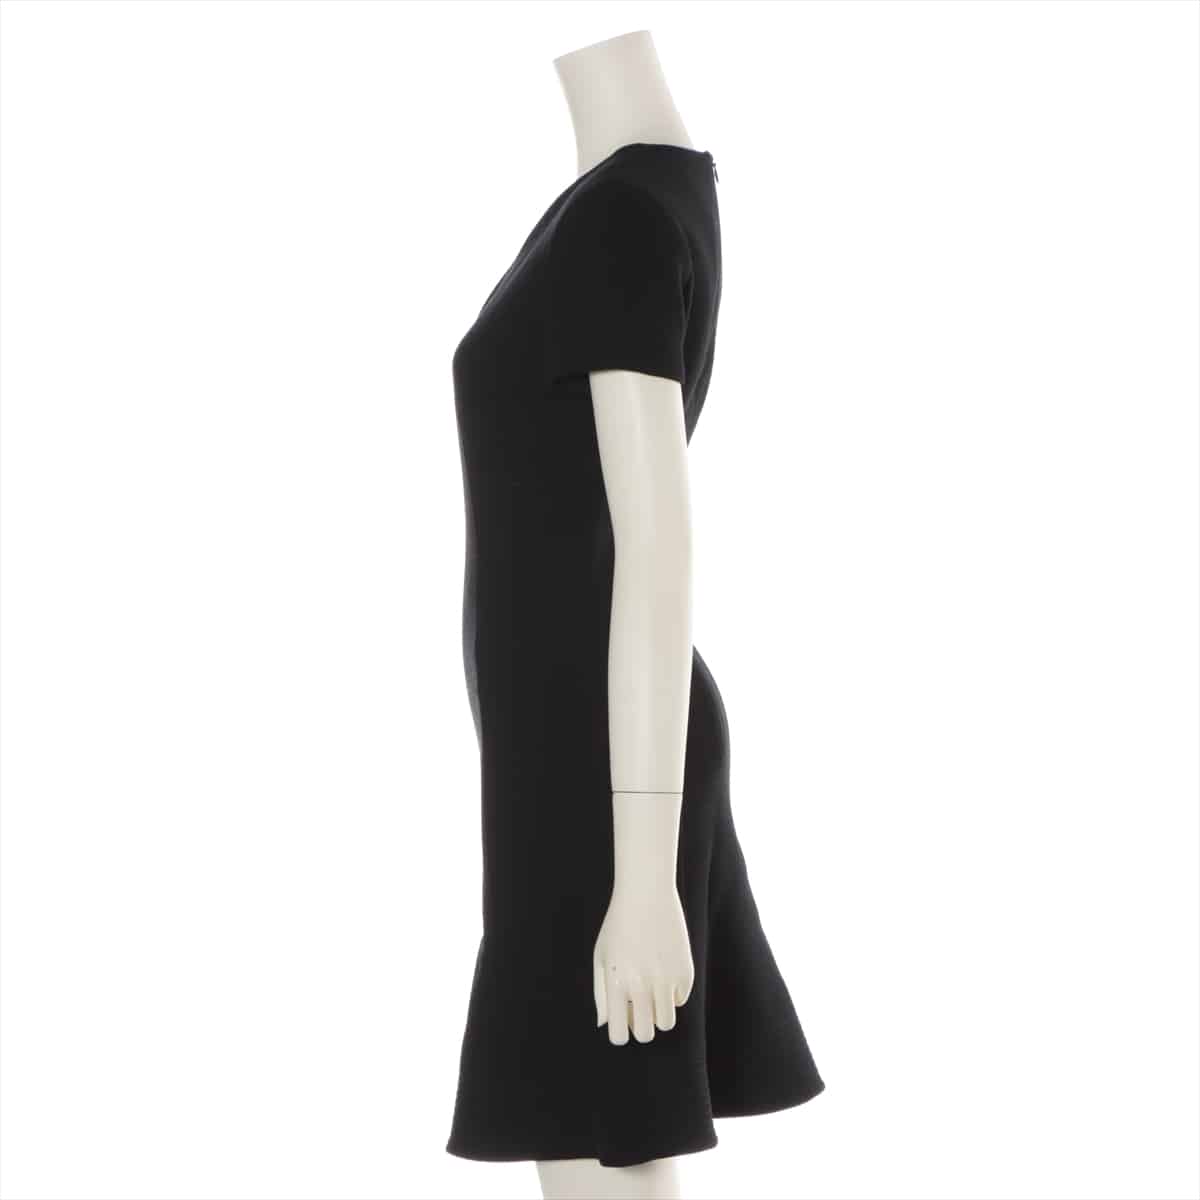 Christian Dior Wool Dress F 34 Ladies' Black